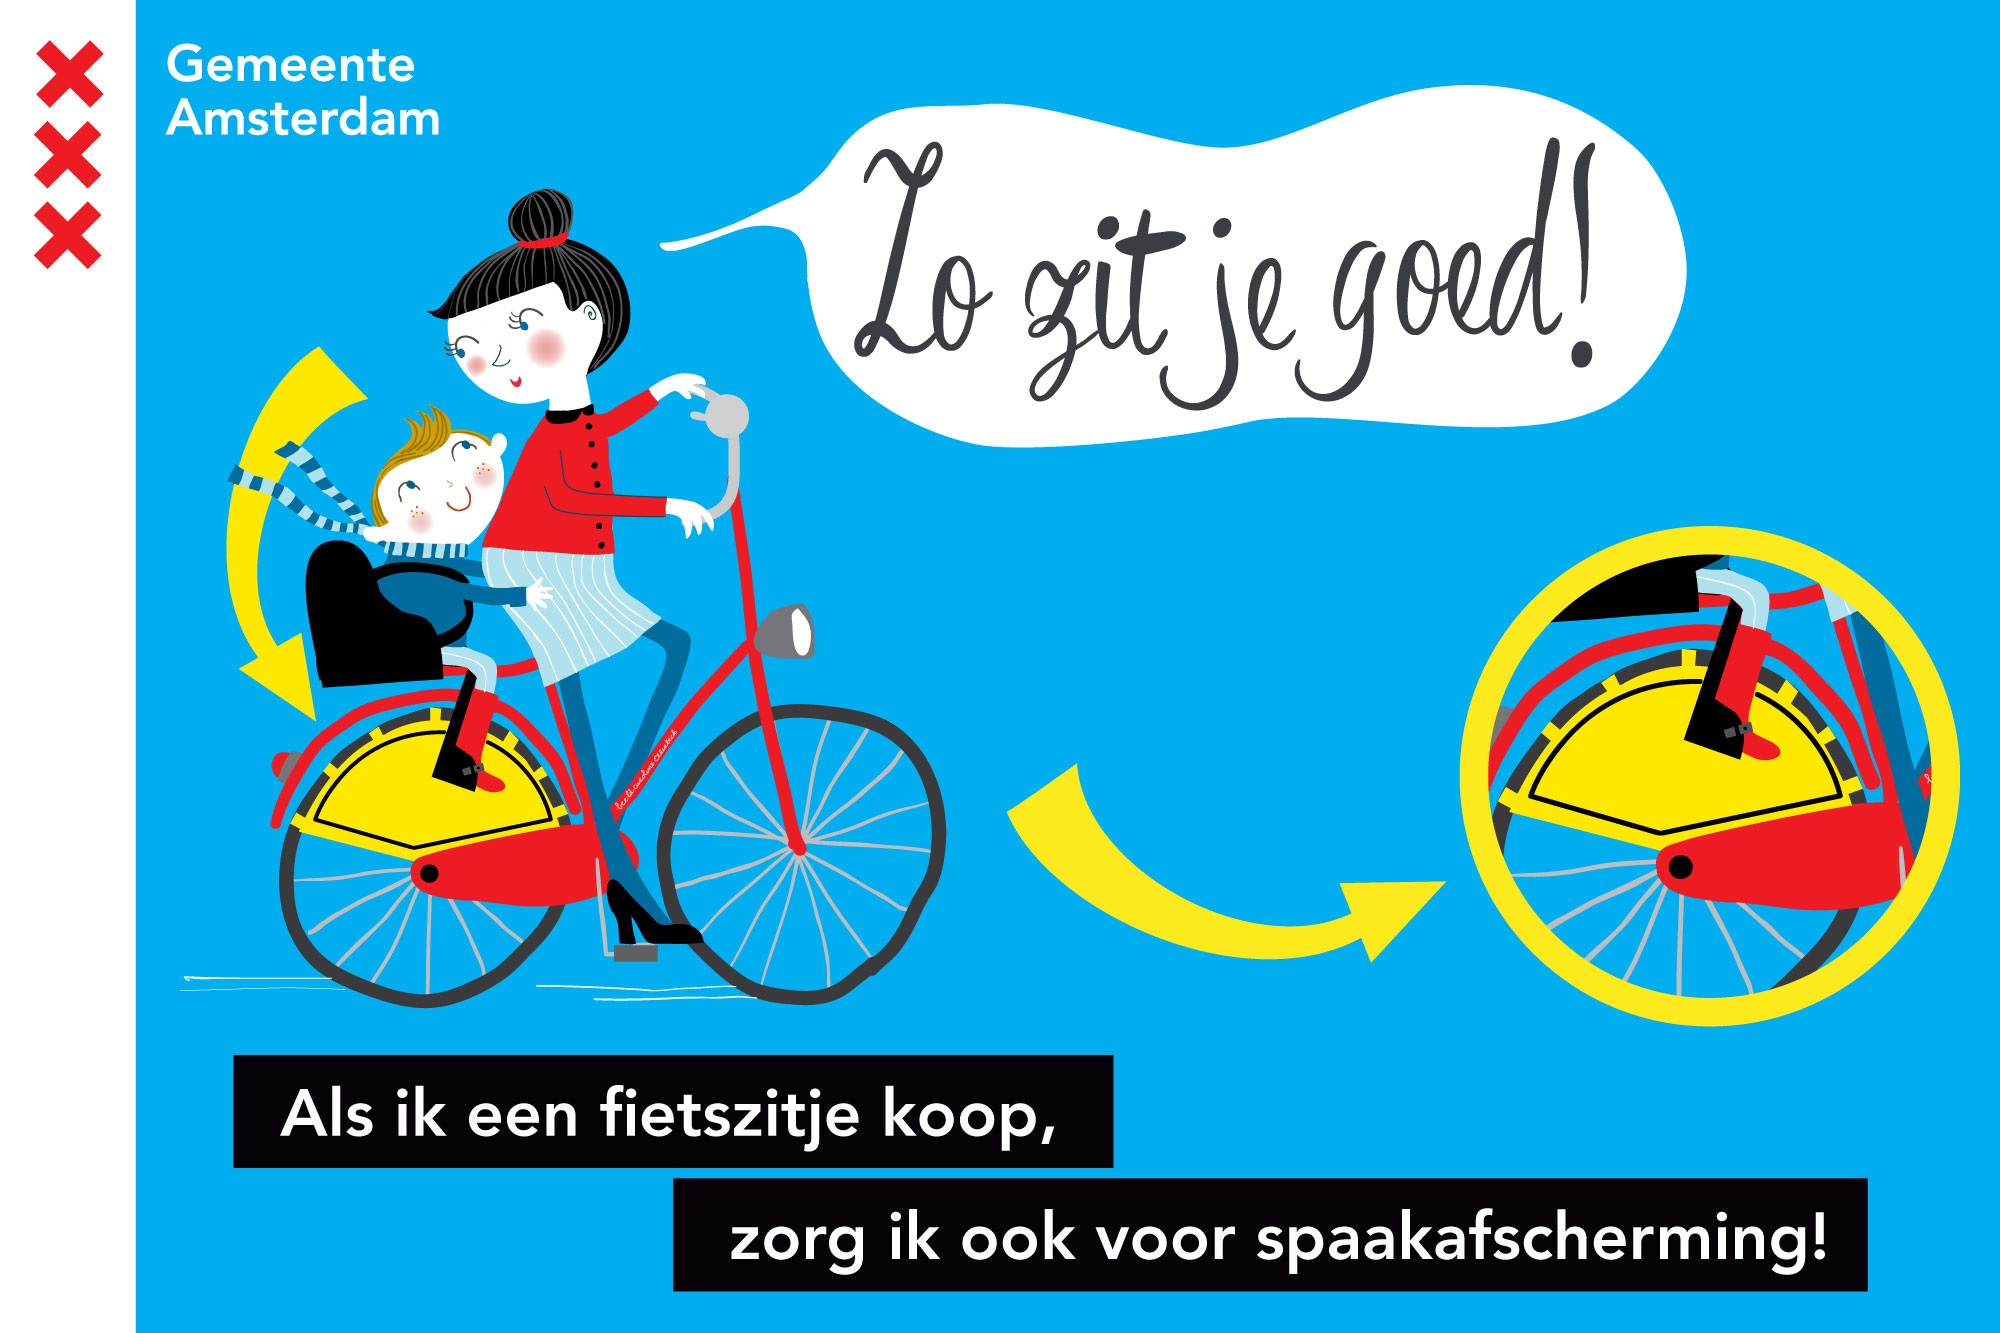 zitten kinderen veilig achterop de fiets | Kidsproof Amsterdam